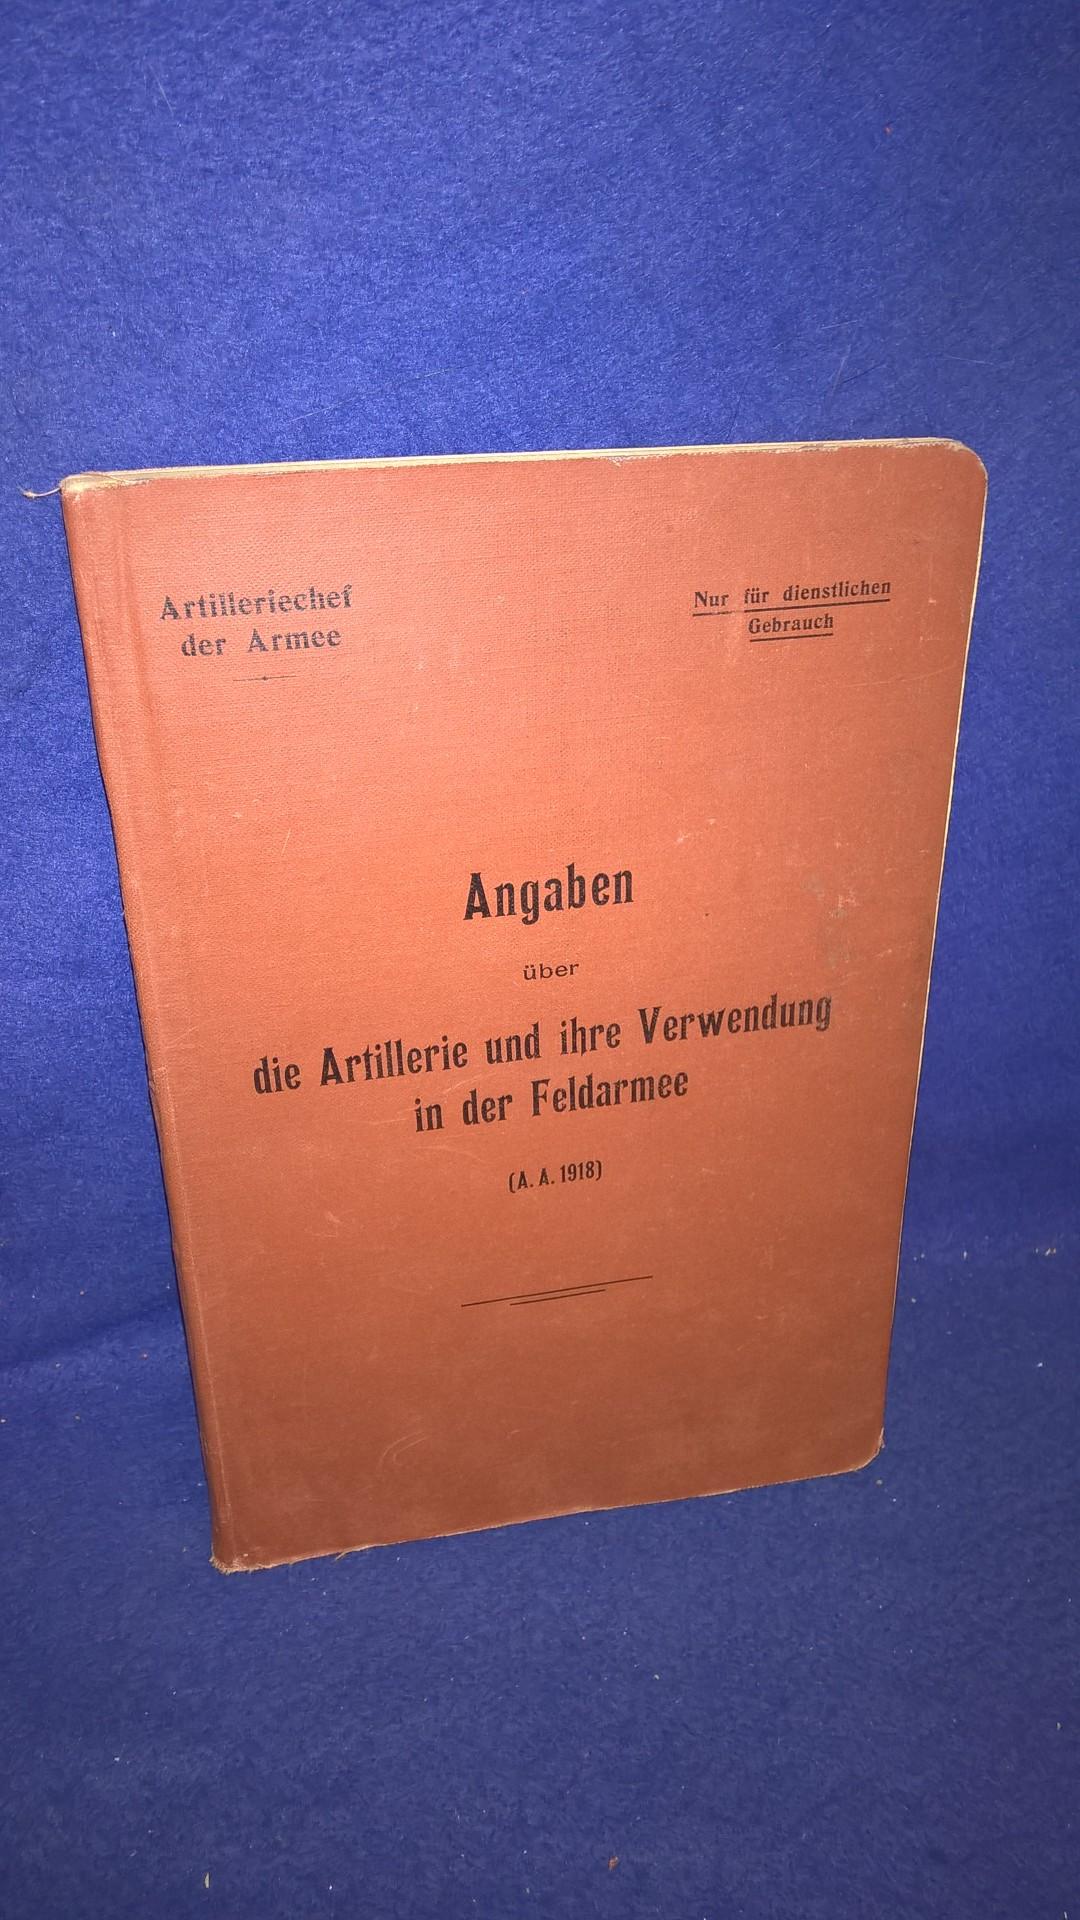 Artilleriechef der Armee. Nur für dienstlichen Gebrauch! Angaben über die Artillerie und ihre Verwendung in der Feldarmee, 1918.